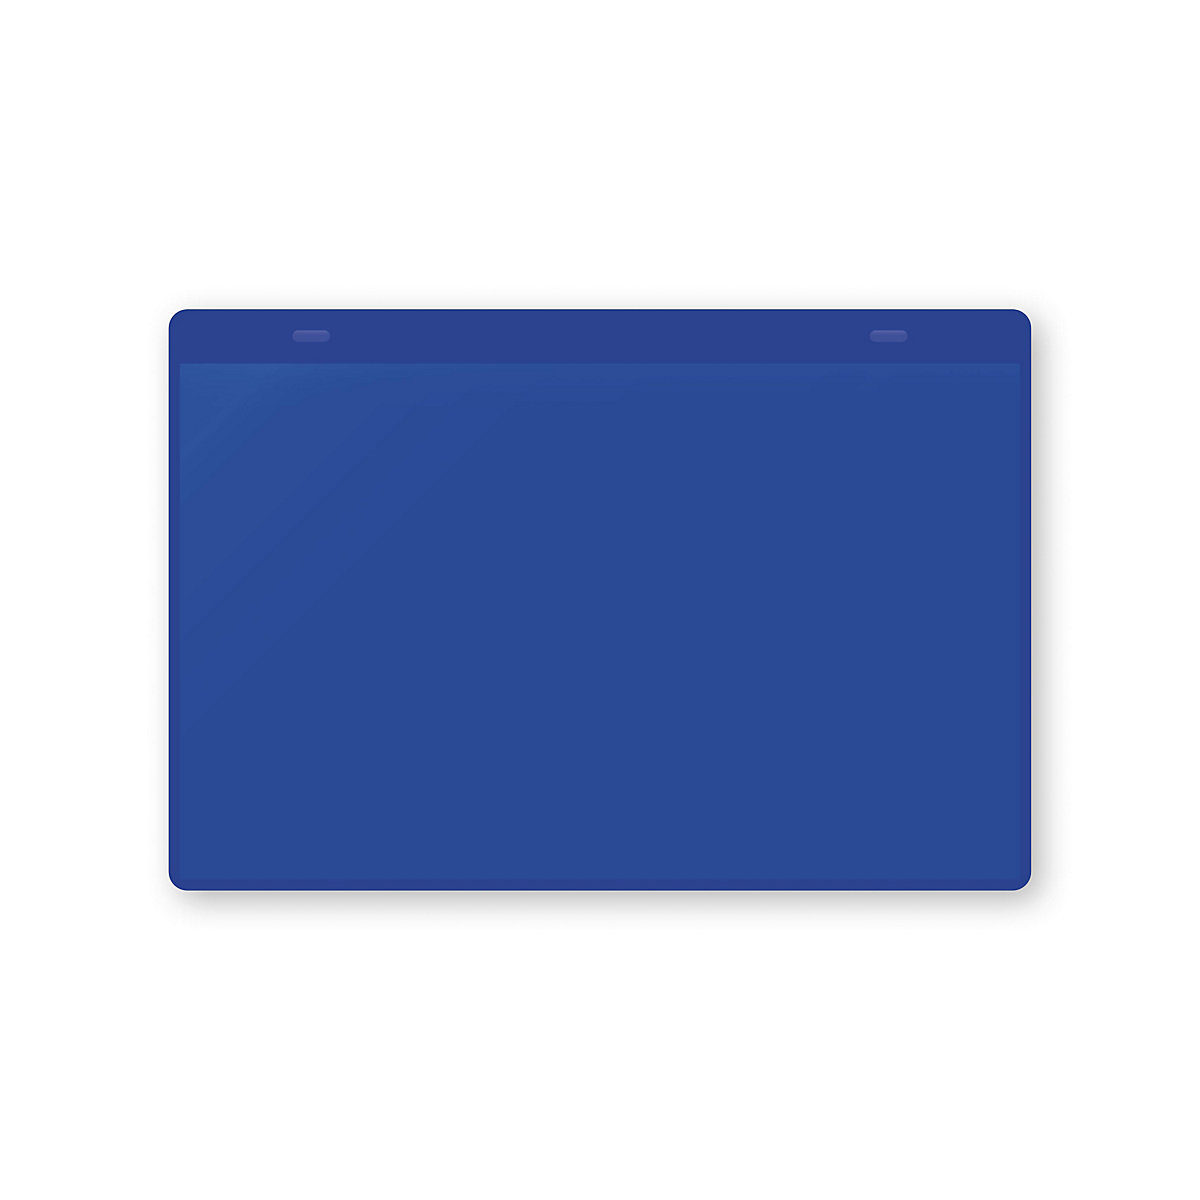 Dokumentumtartó tasakok akasztópánttal, DIN A5, fekvő, cs. e. 50 db, kék